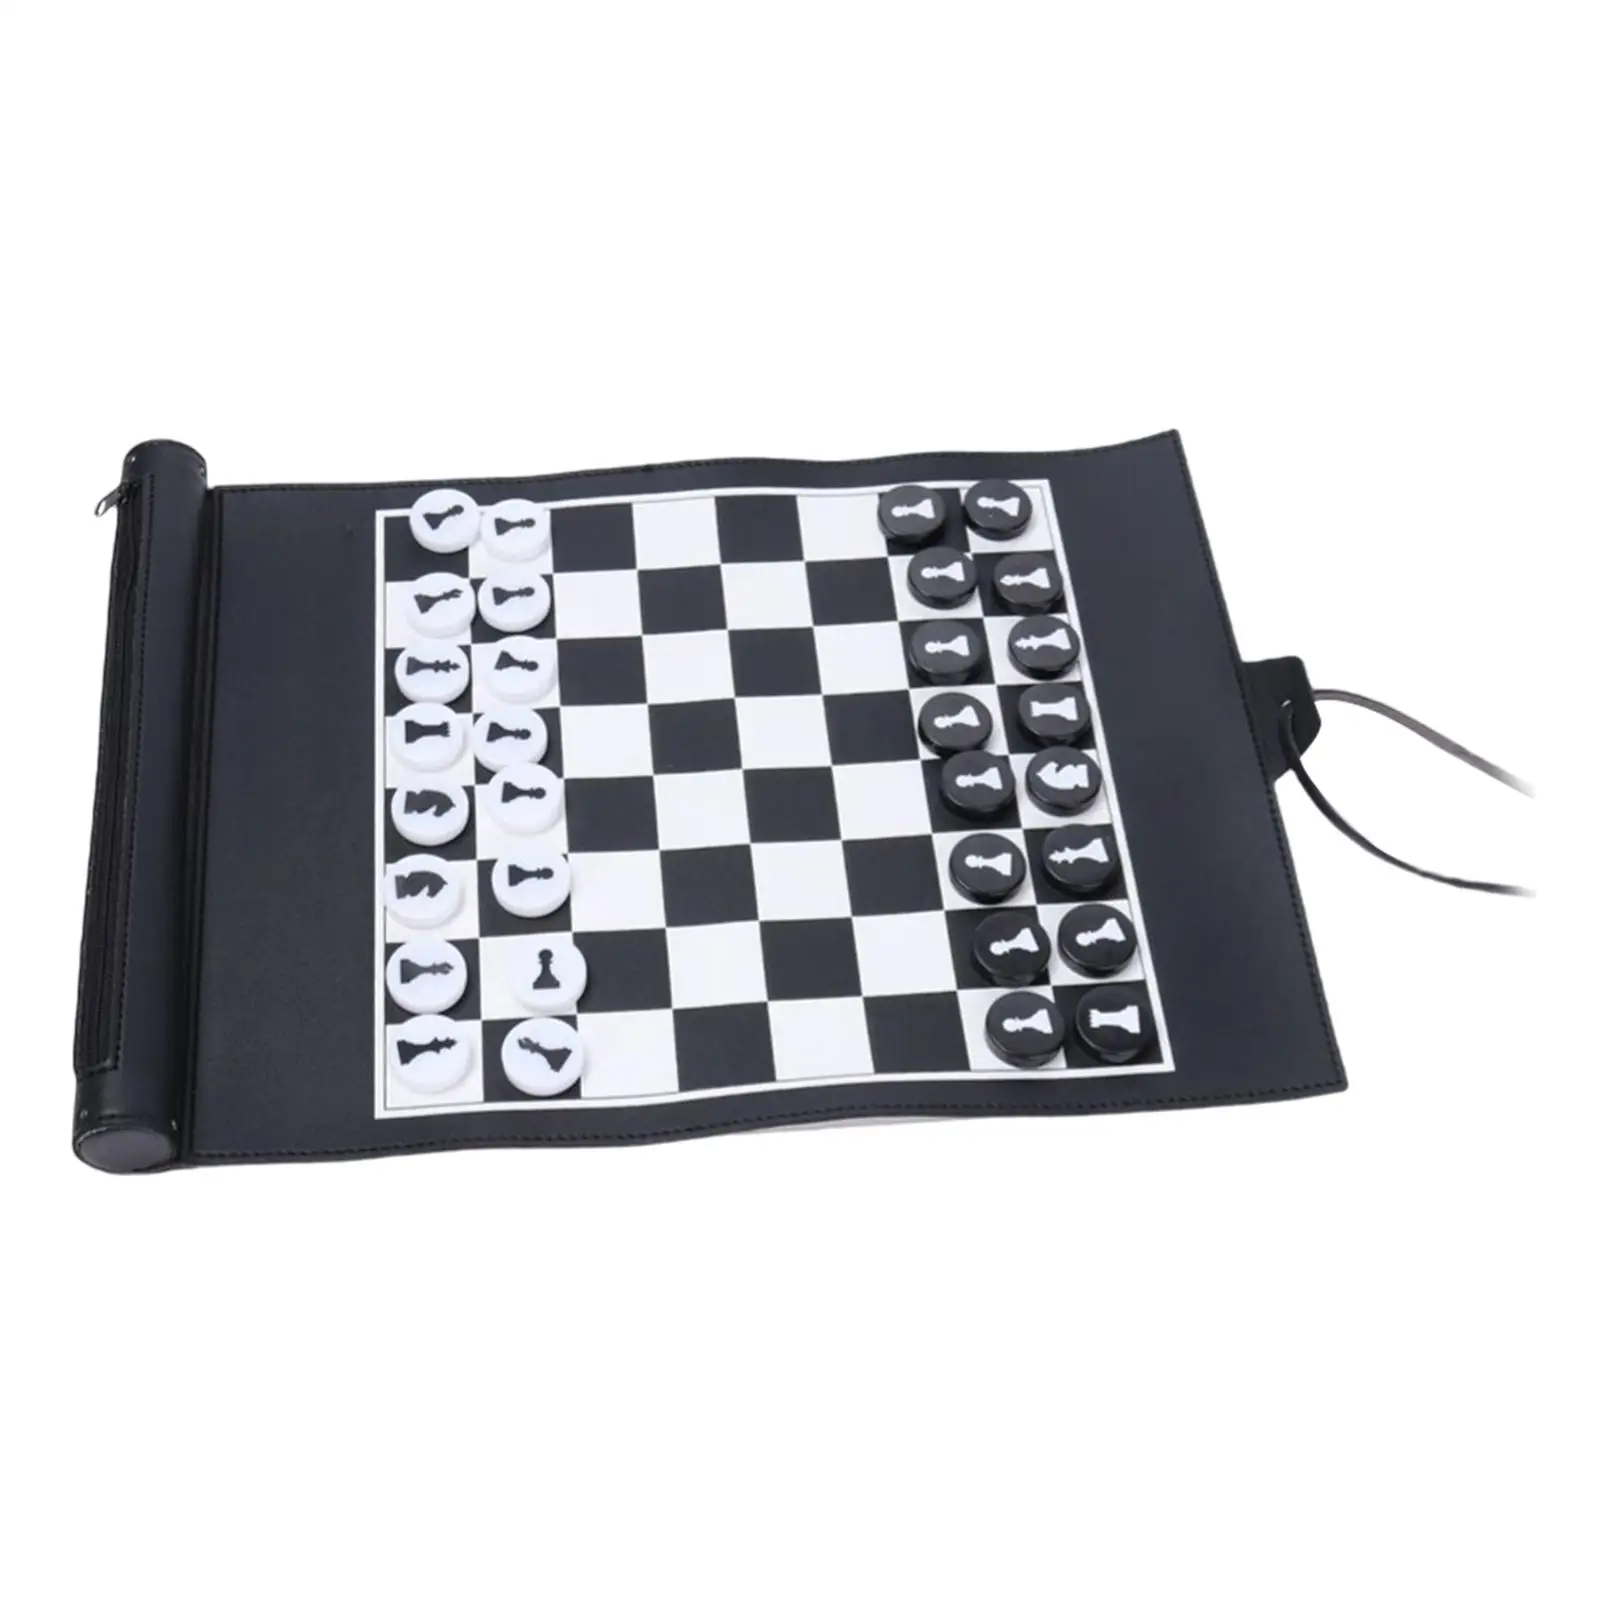 Folding  Set 32 Black White Chessmen Board Game for All Levels